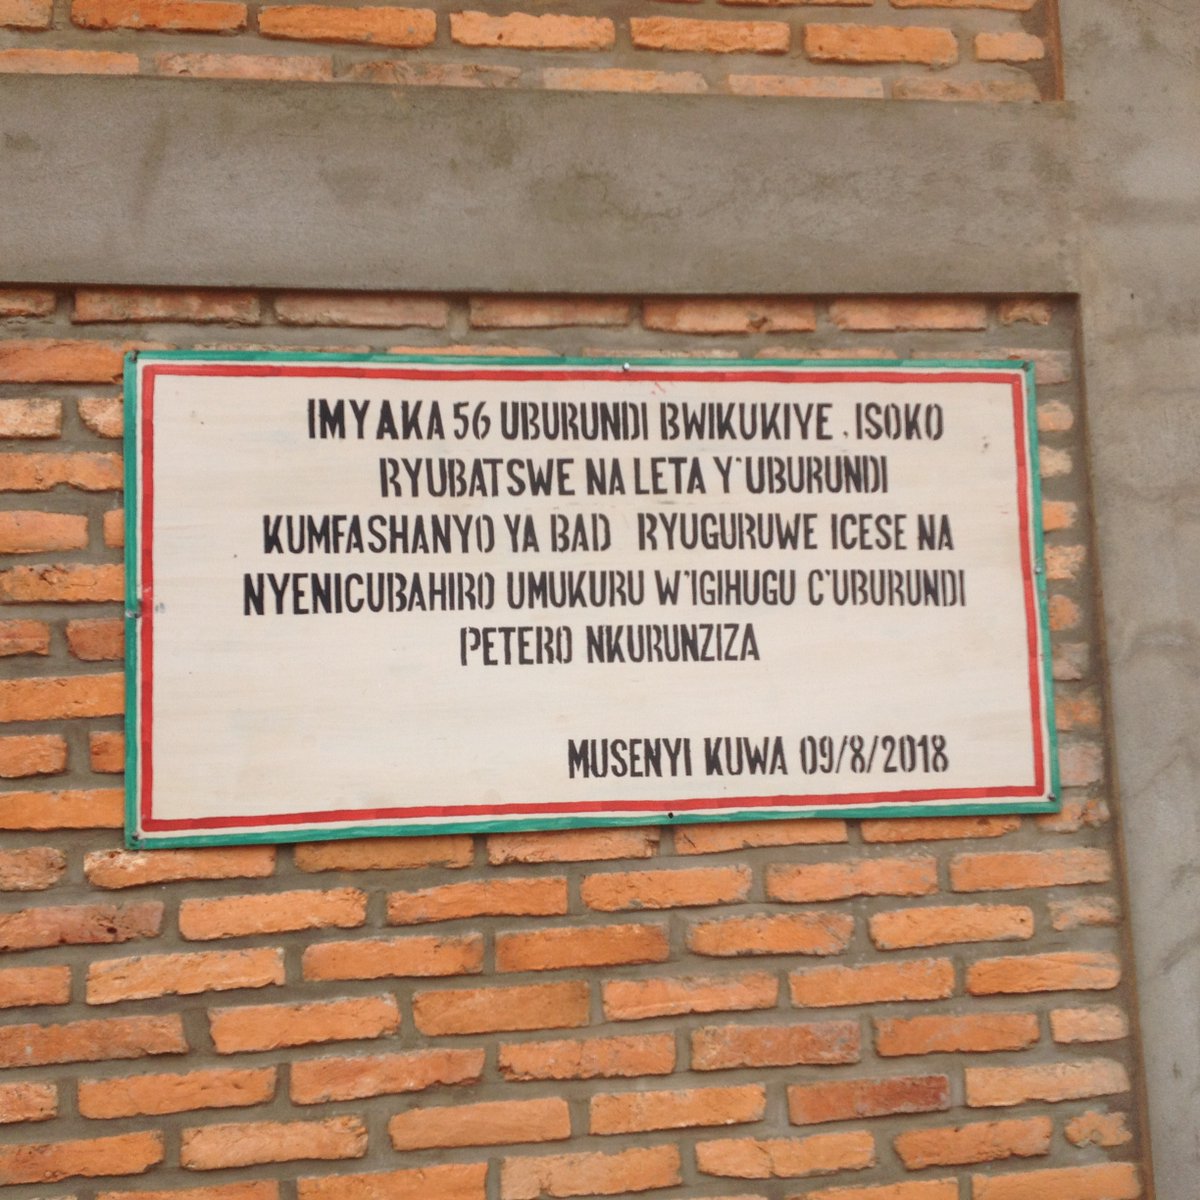 Burundi : Un comptable de Makamba content du climat des affaires ( Photo : urumuri news 2019 )